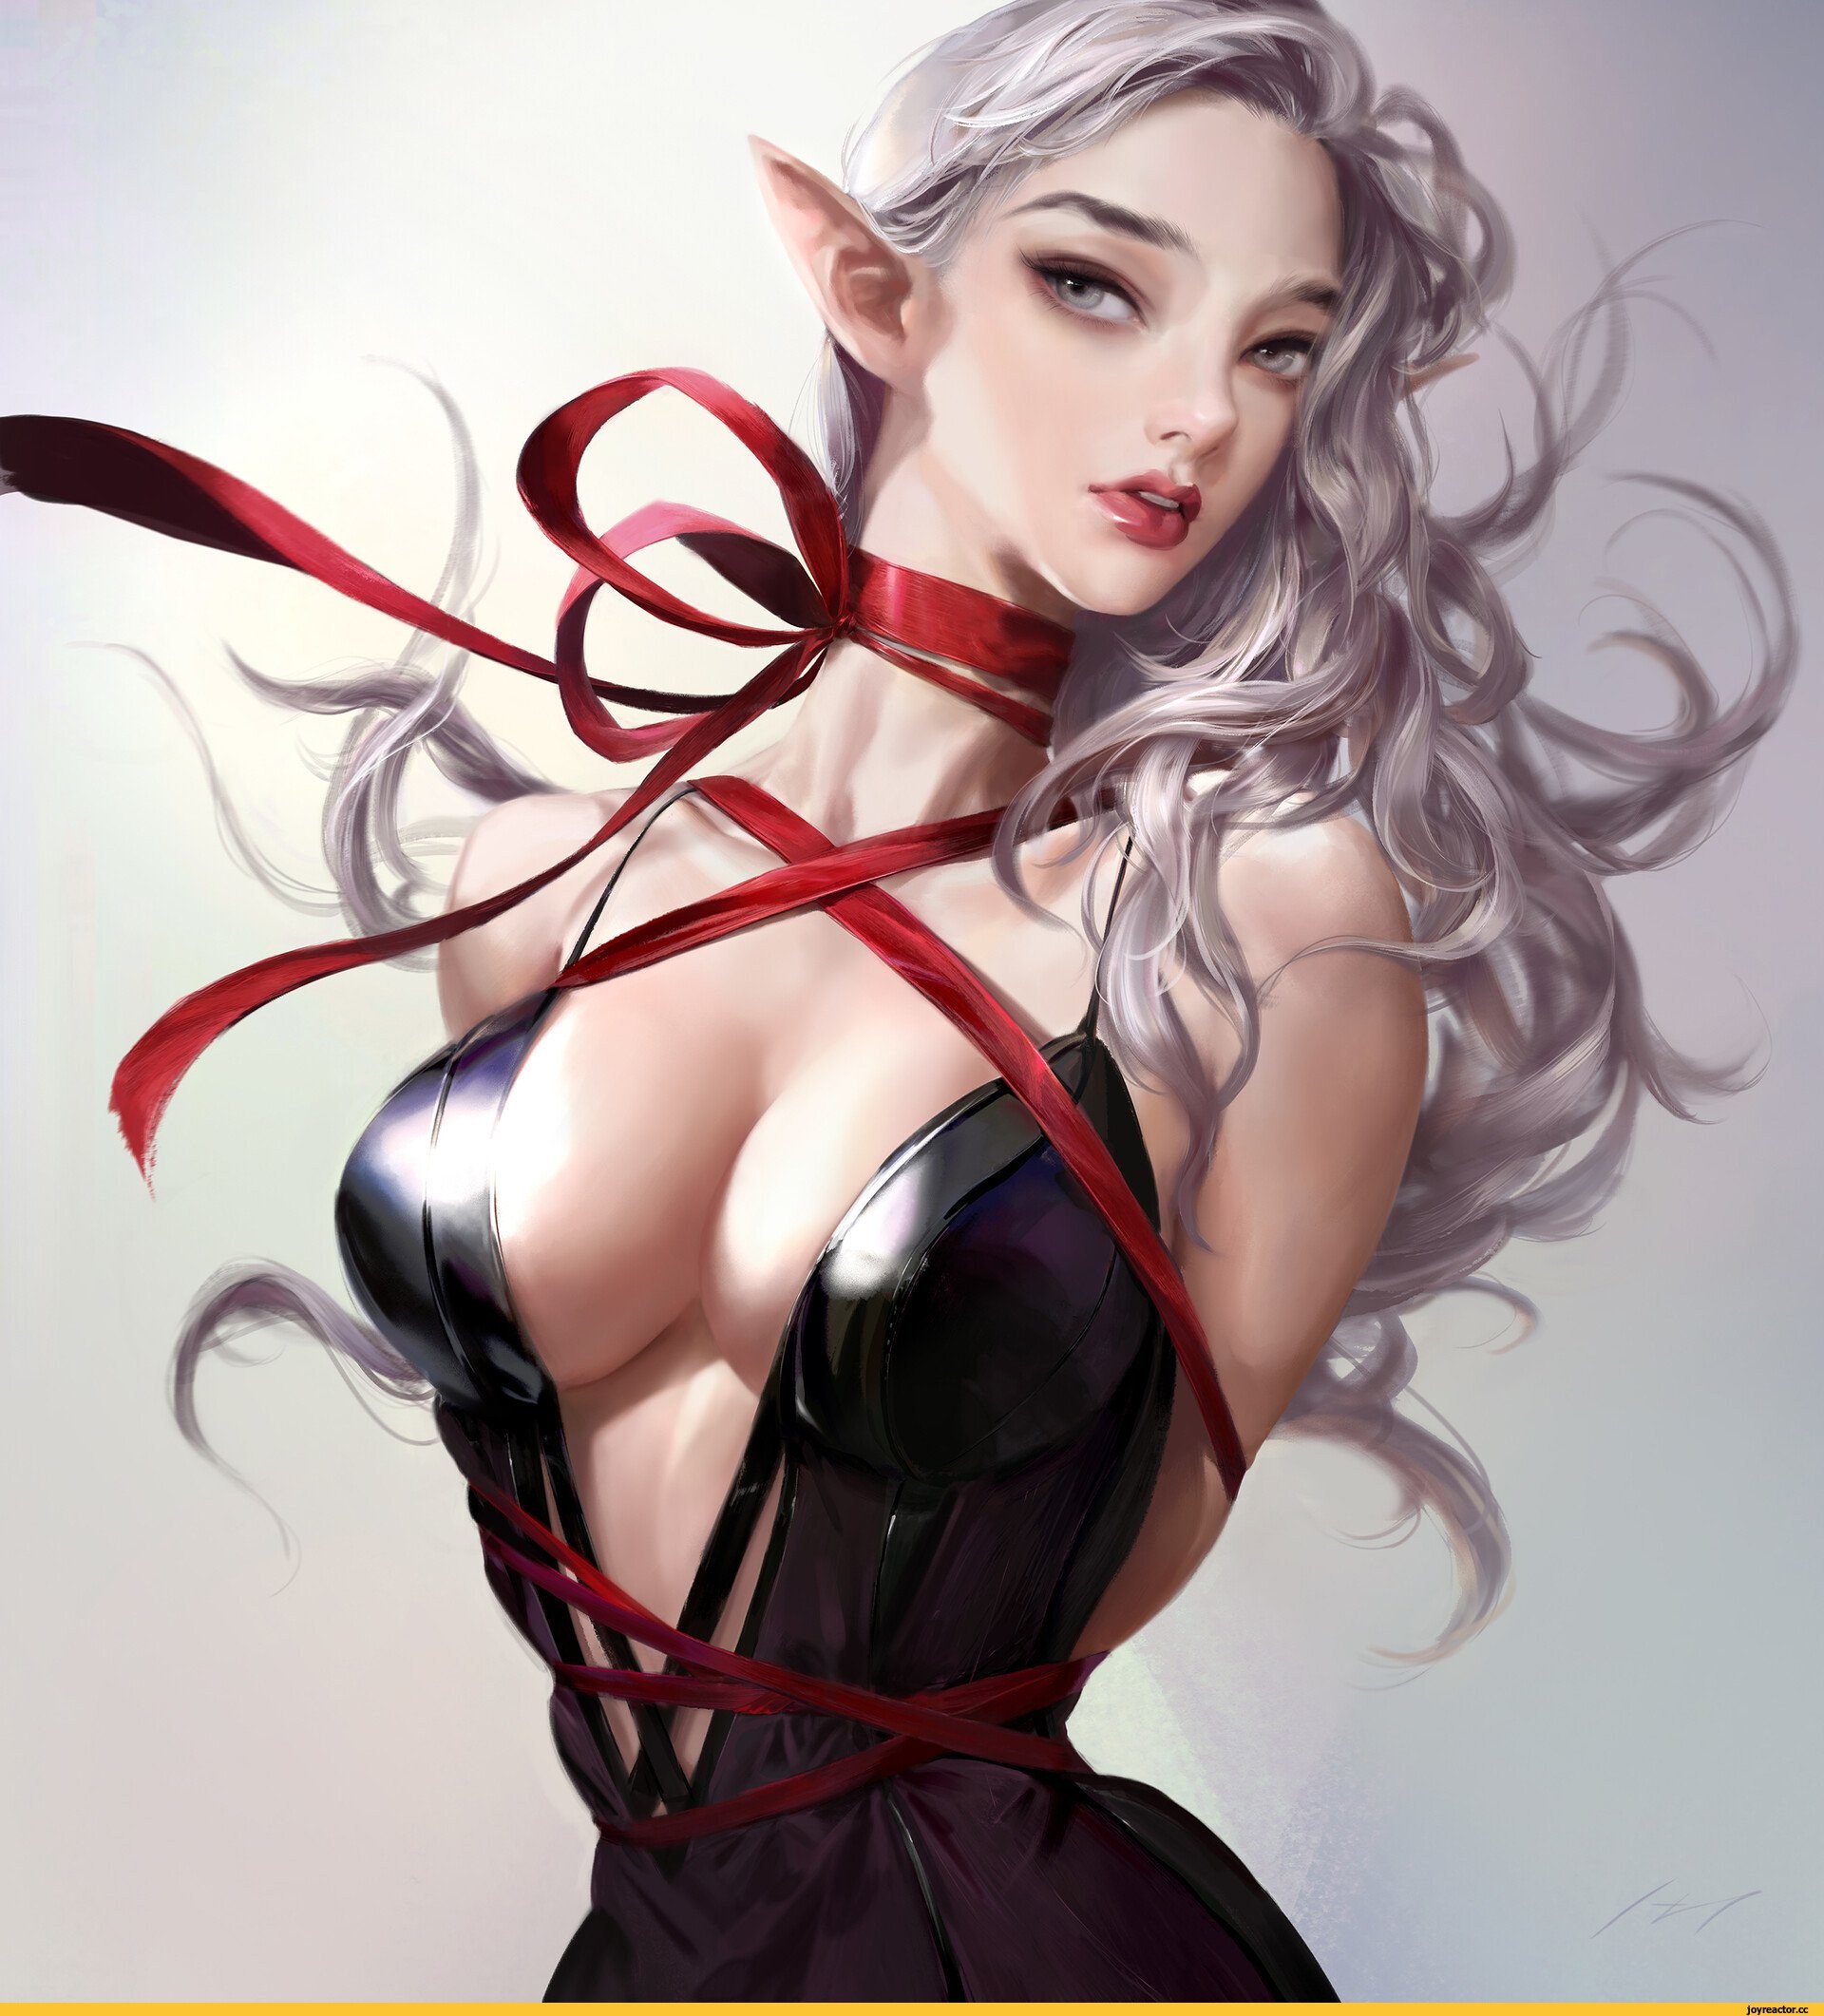 https://pichunter.club/uploads/posts/2022-12/1671232463_41-pichunter-club-p-erotica-of-a-beauty-in-a-corset-48.jpg